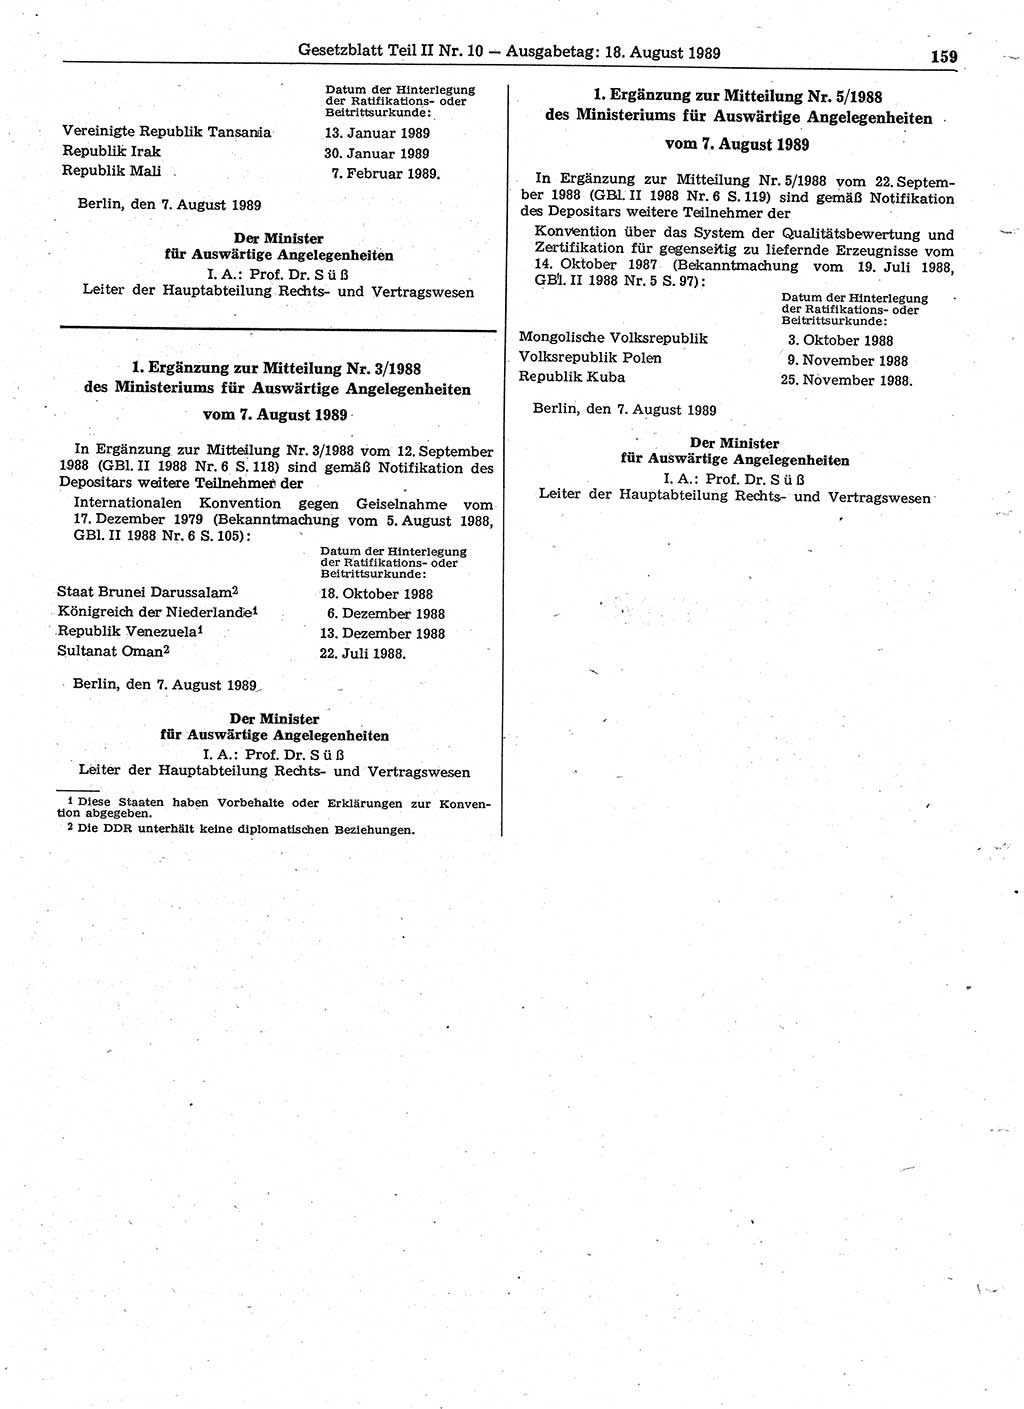 Gesetzblatt (GBl.) der Deutschen Demokratischen Republik (DDR) Teil ⅠⅠ 1989, Seite 159 (GBl. DDR ⅠⅠ 1989, S. 159)